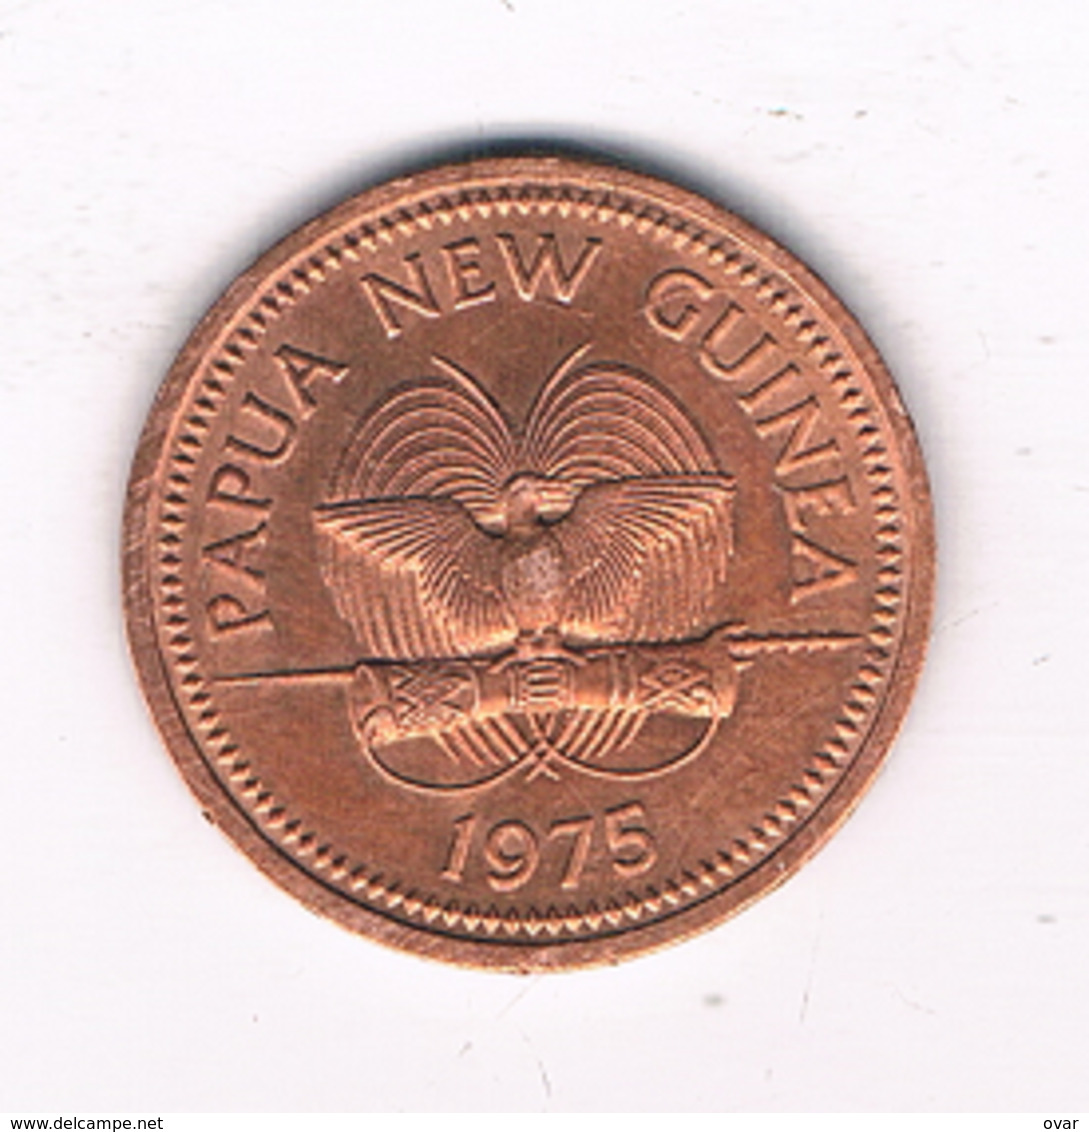 1 TOEA 1975 PAPOEA NEW GUINEA //7310/ - Papua New Guinea